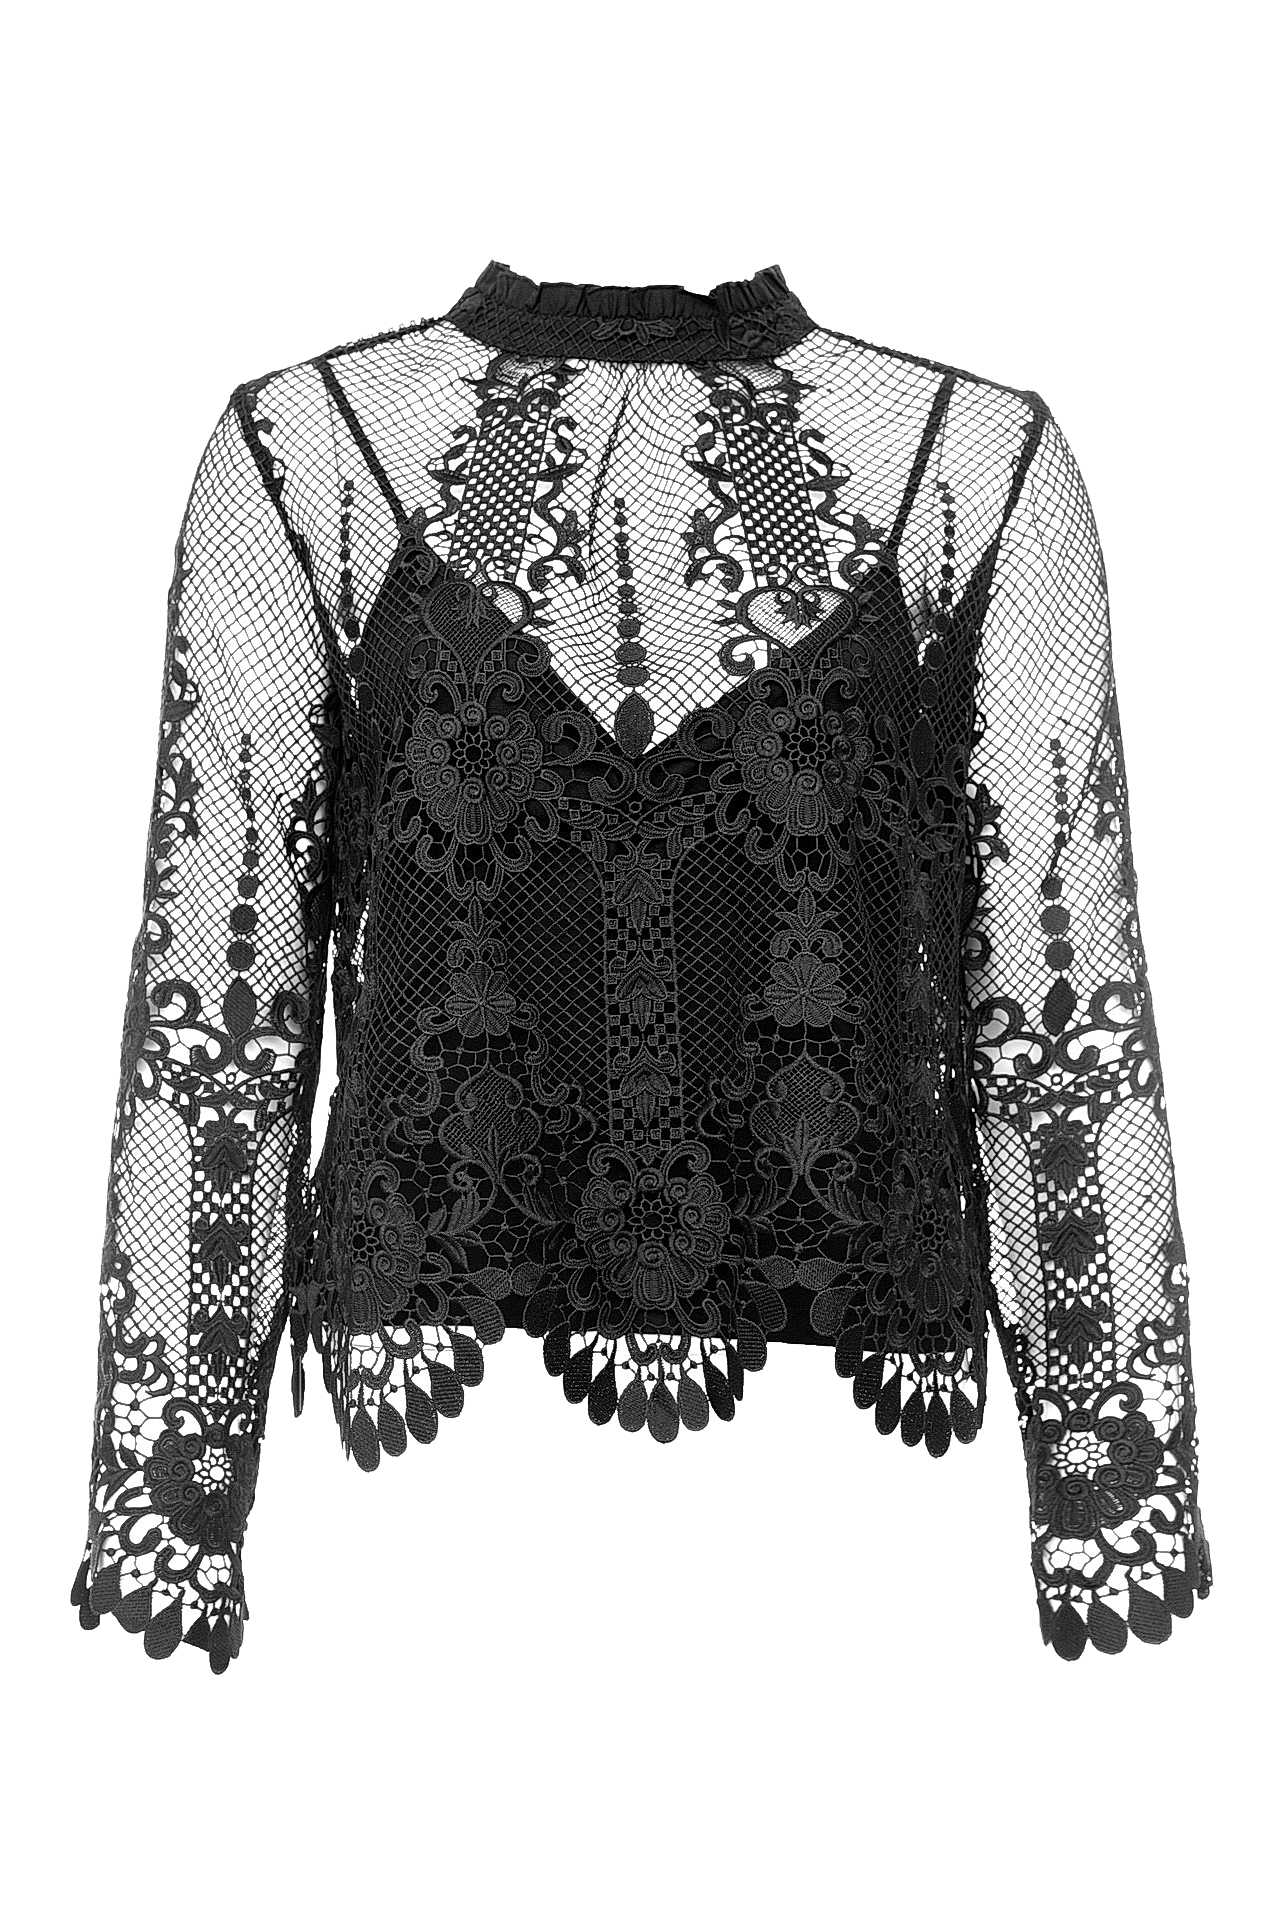 Одежда женская Блузка TWIN-SET (TA72HQ/18.1). Купить за 8450 руб.